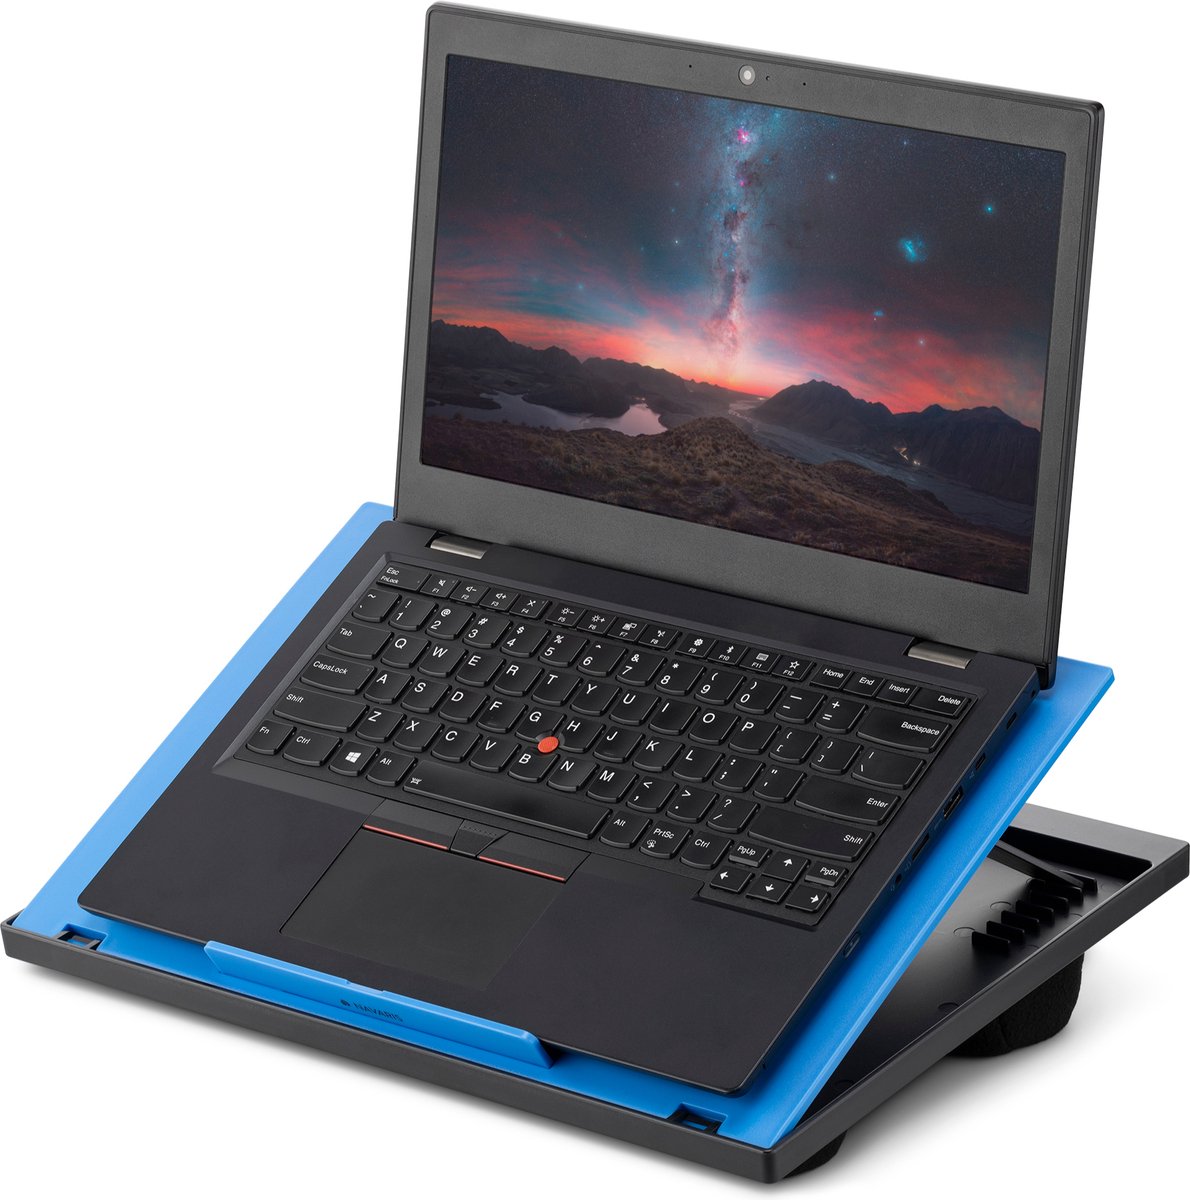 Navaris laptop standaard - Verstelbare laptoptafel voor op schoot - Laptopstandaard met kussen aan de onderkant - Schootkussen - Zwart